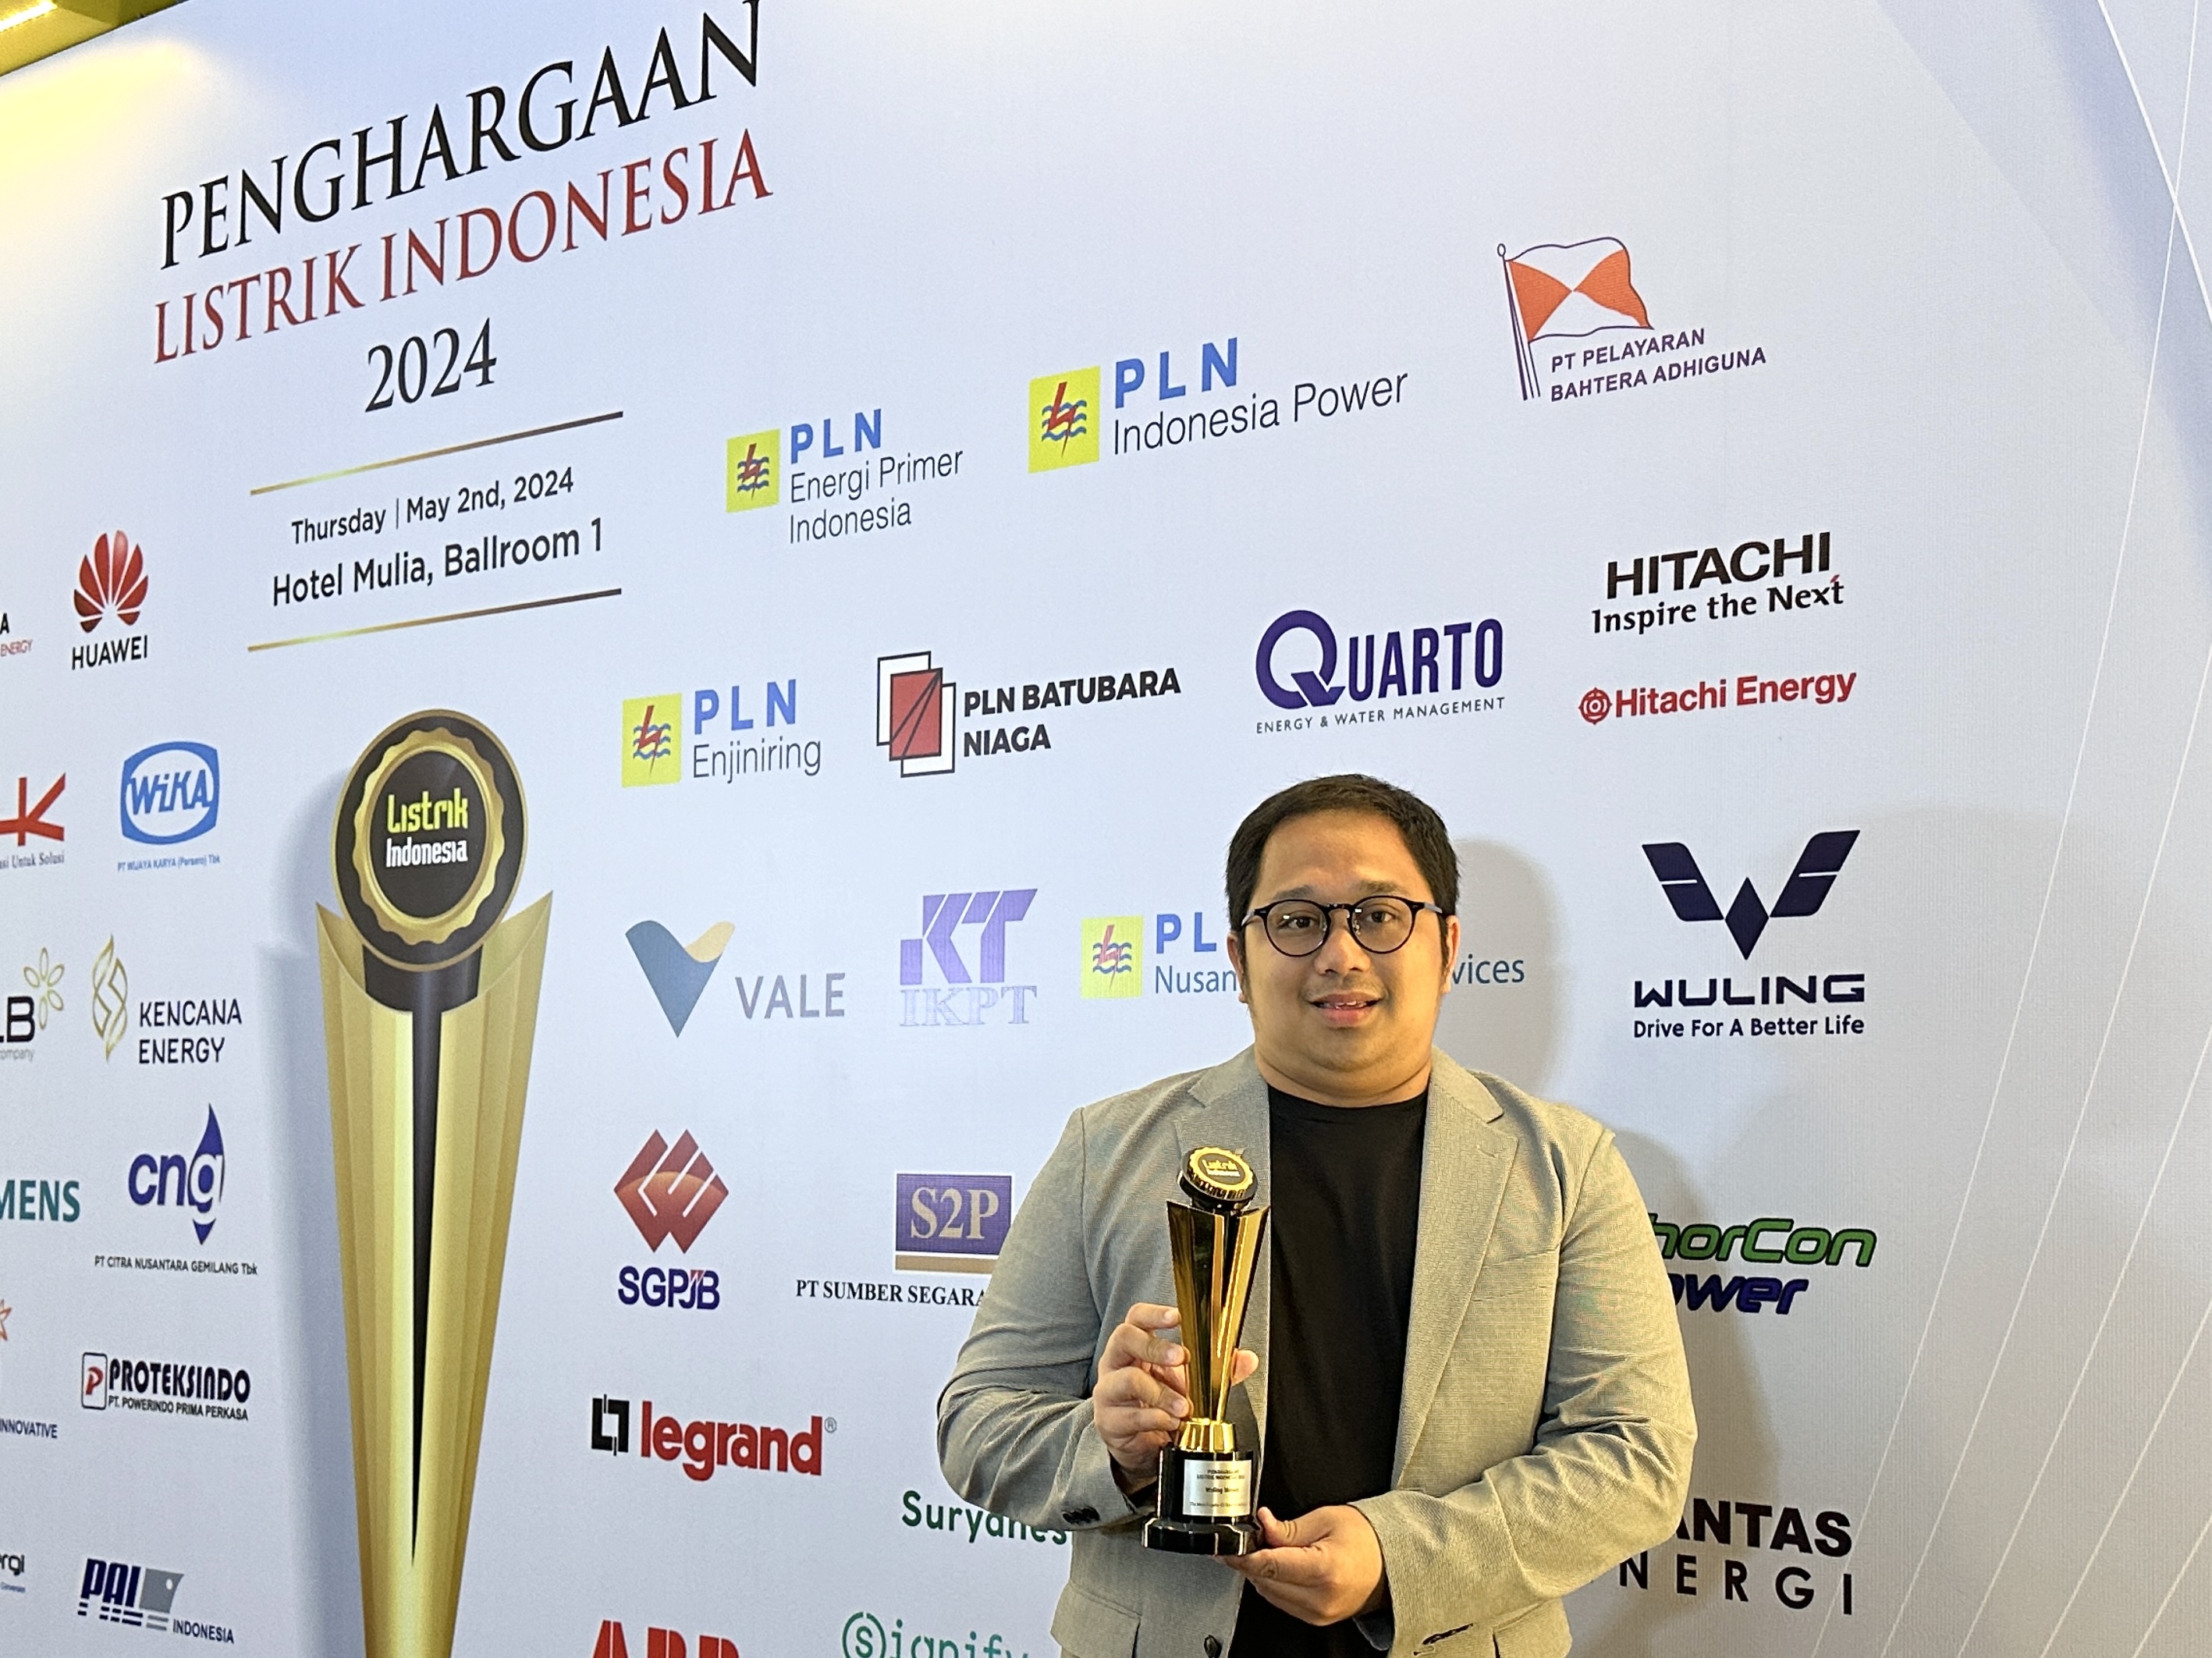 Image Wuling Raih The Most Popular EV Brand in Indonesia dalam Penghargaan Listrik Indonesia 2024